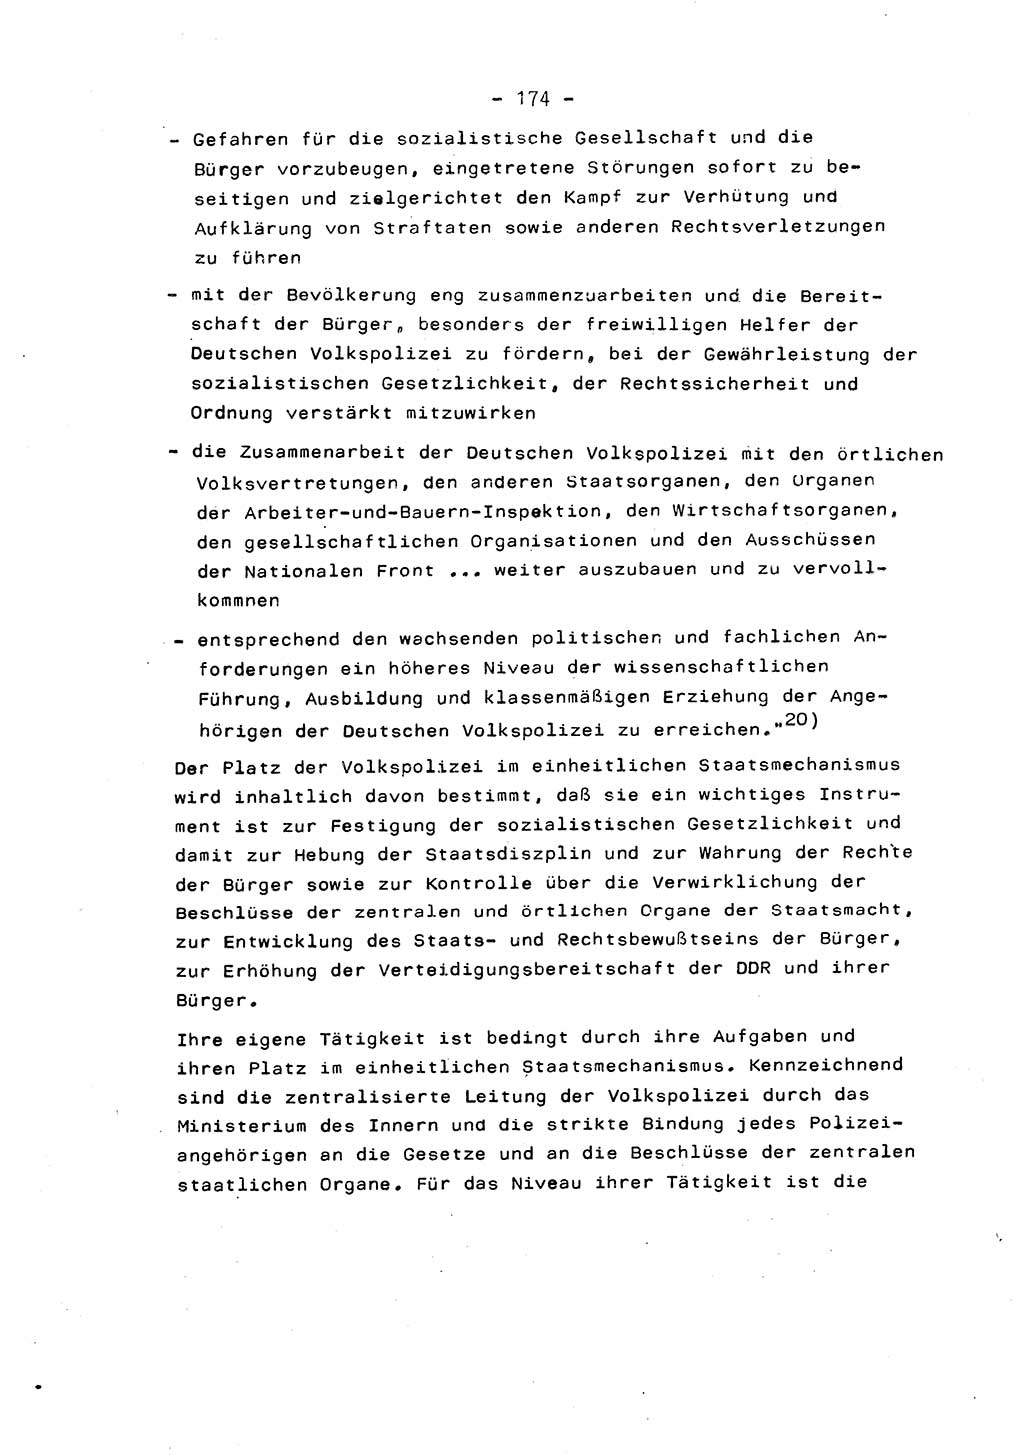 Marxistisch-leninistische Staats- und Rechtstheorie [Deutsche Demokratische Republik (DDR)] 1975, Seite 174 (ML St.-R.-Th. DDR 1975, S. 174)